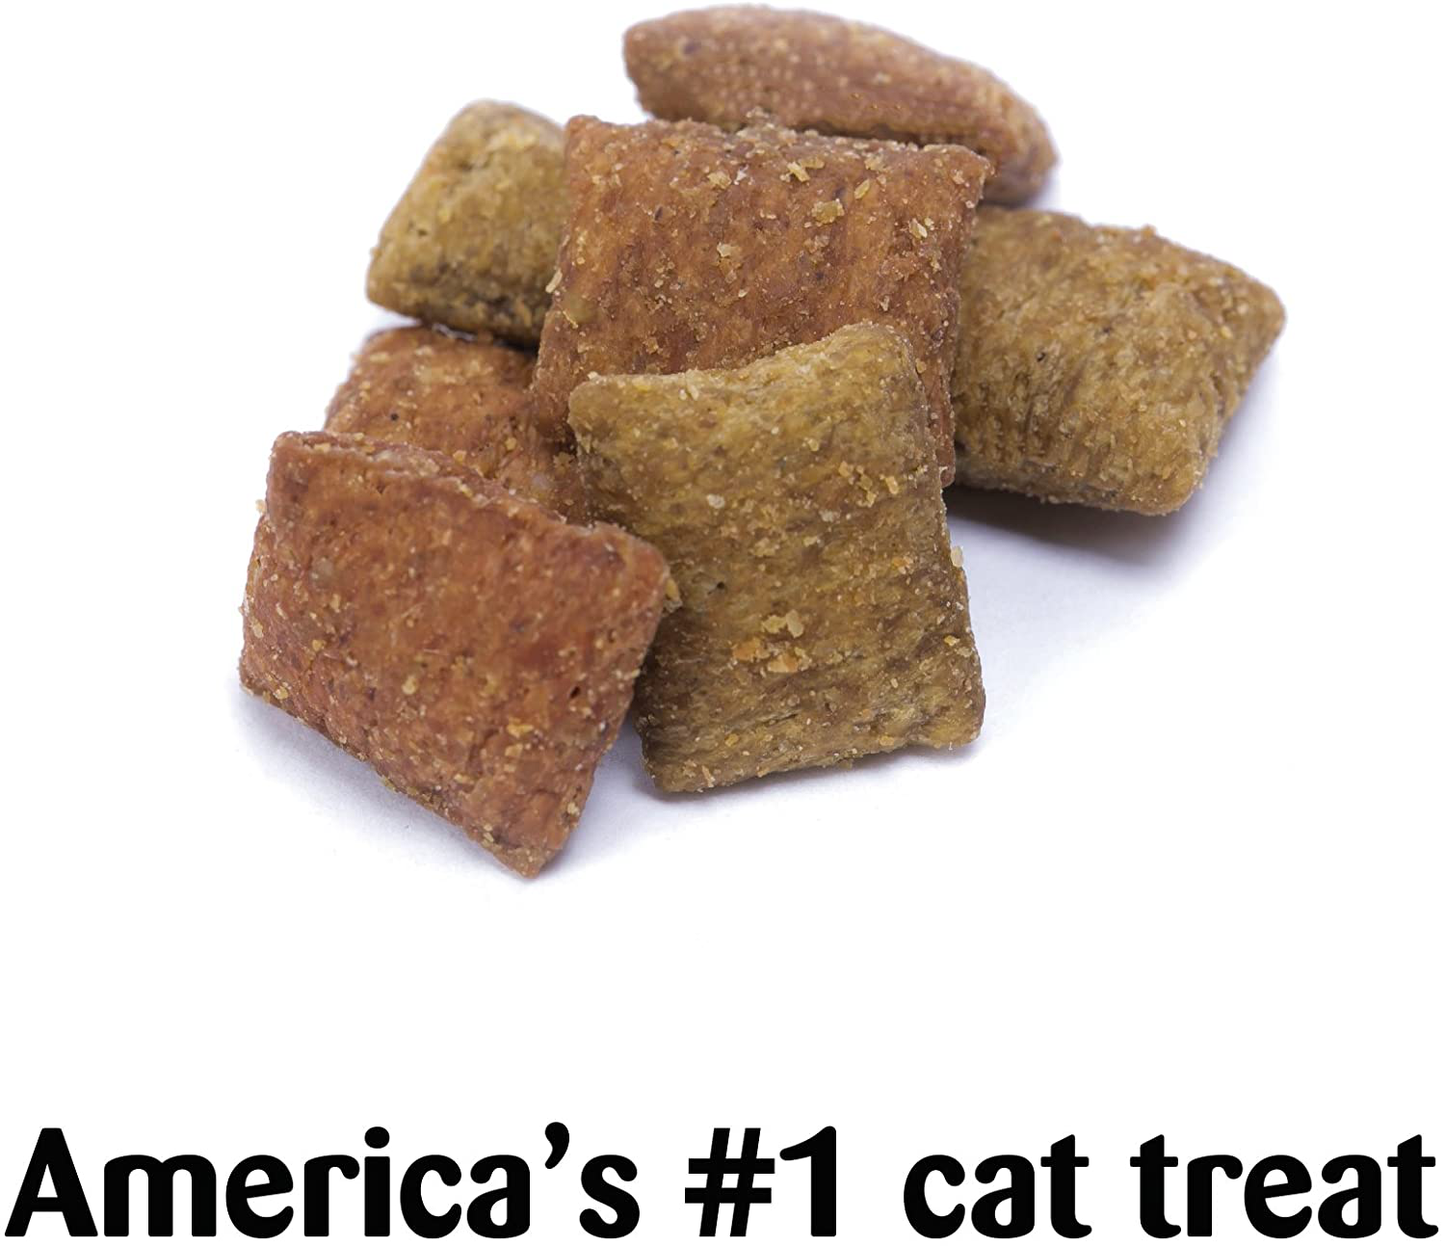 Temptations Classic Cat Treats Seafood Medley Flavor, 16 Oz. Tub